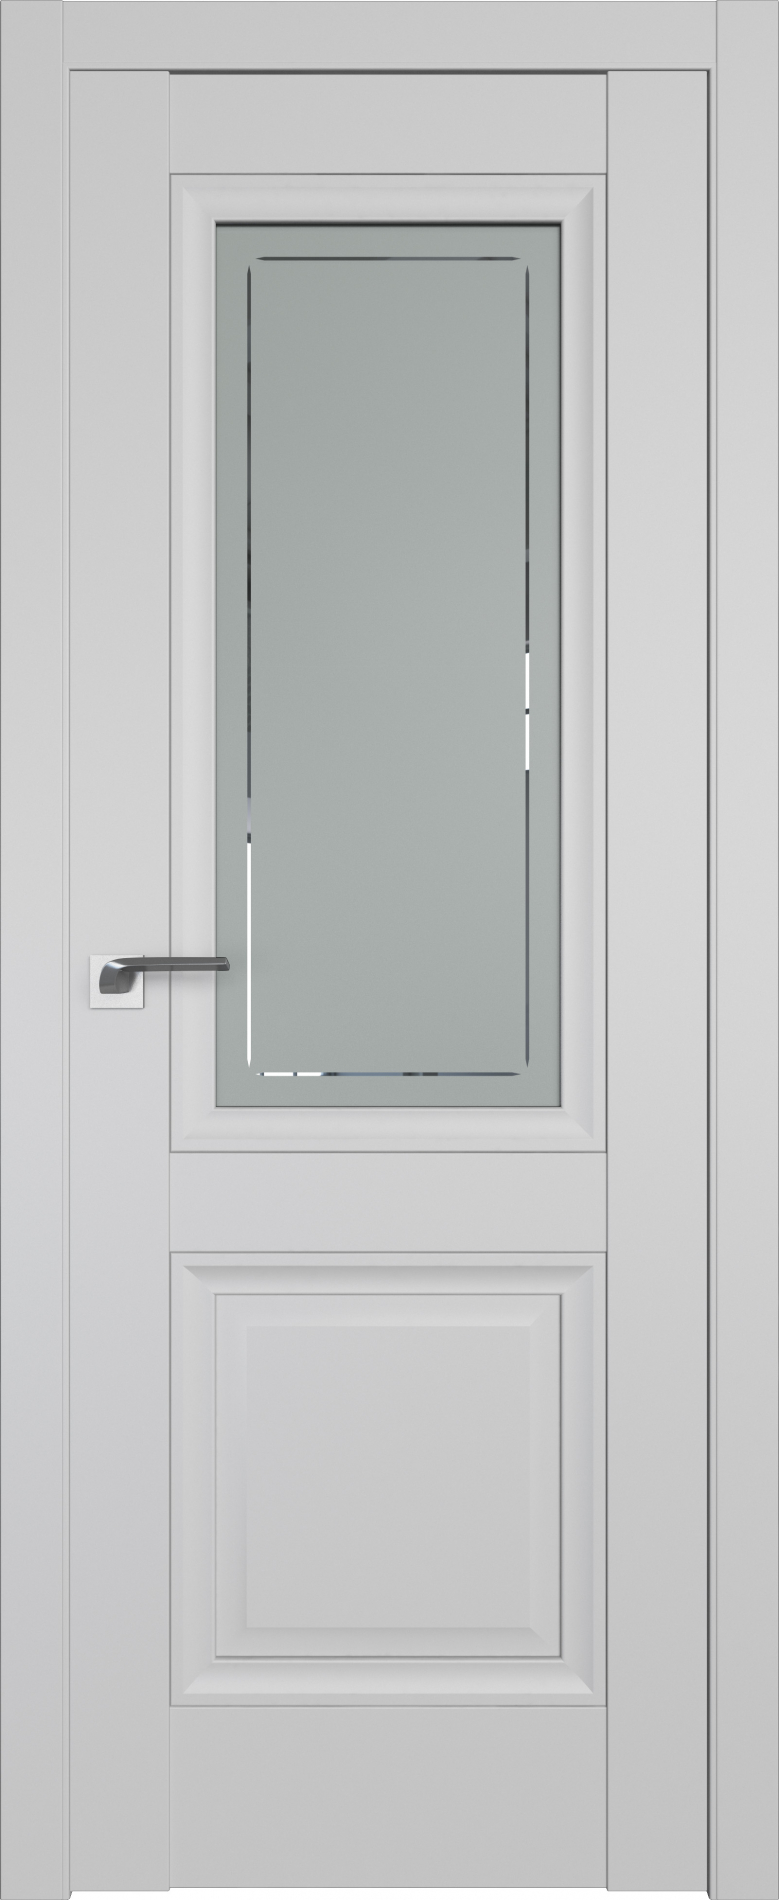 межкомнатные двери  Profil Doors 2.113U гравировка 4 манхэттен